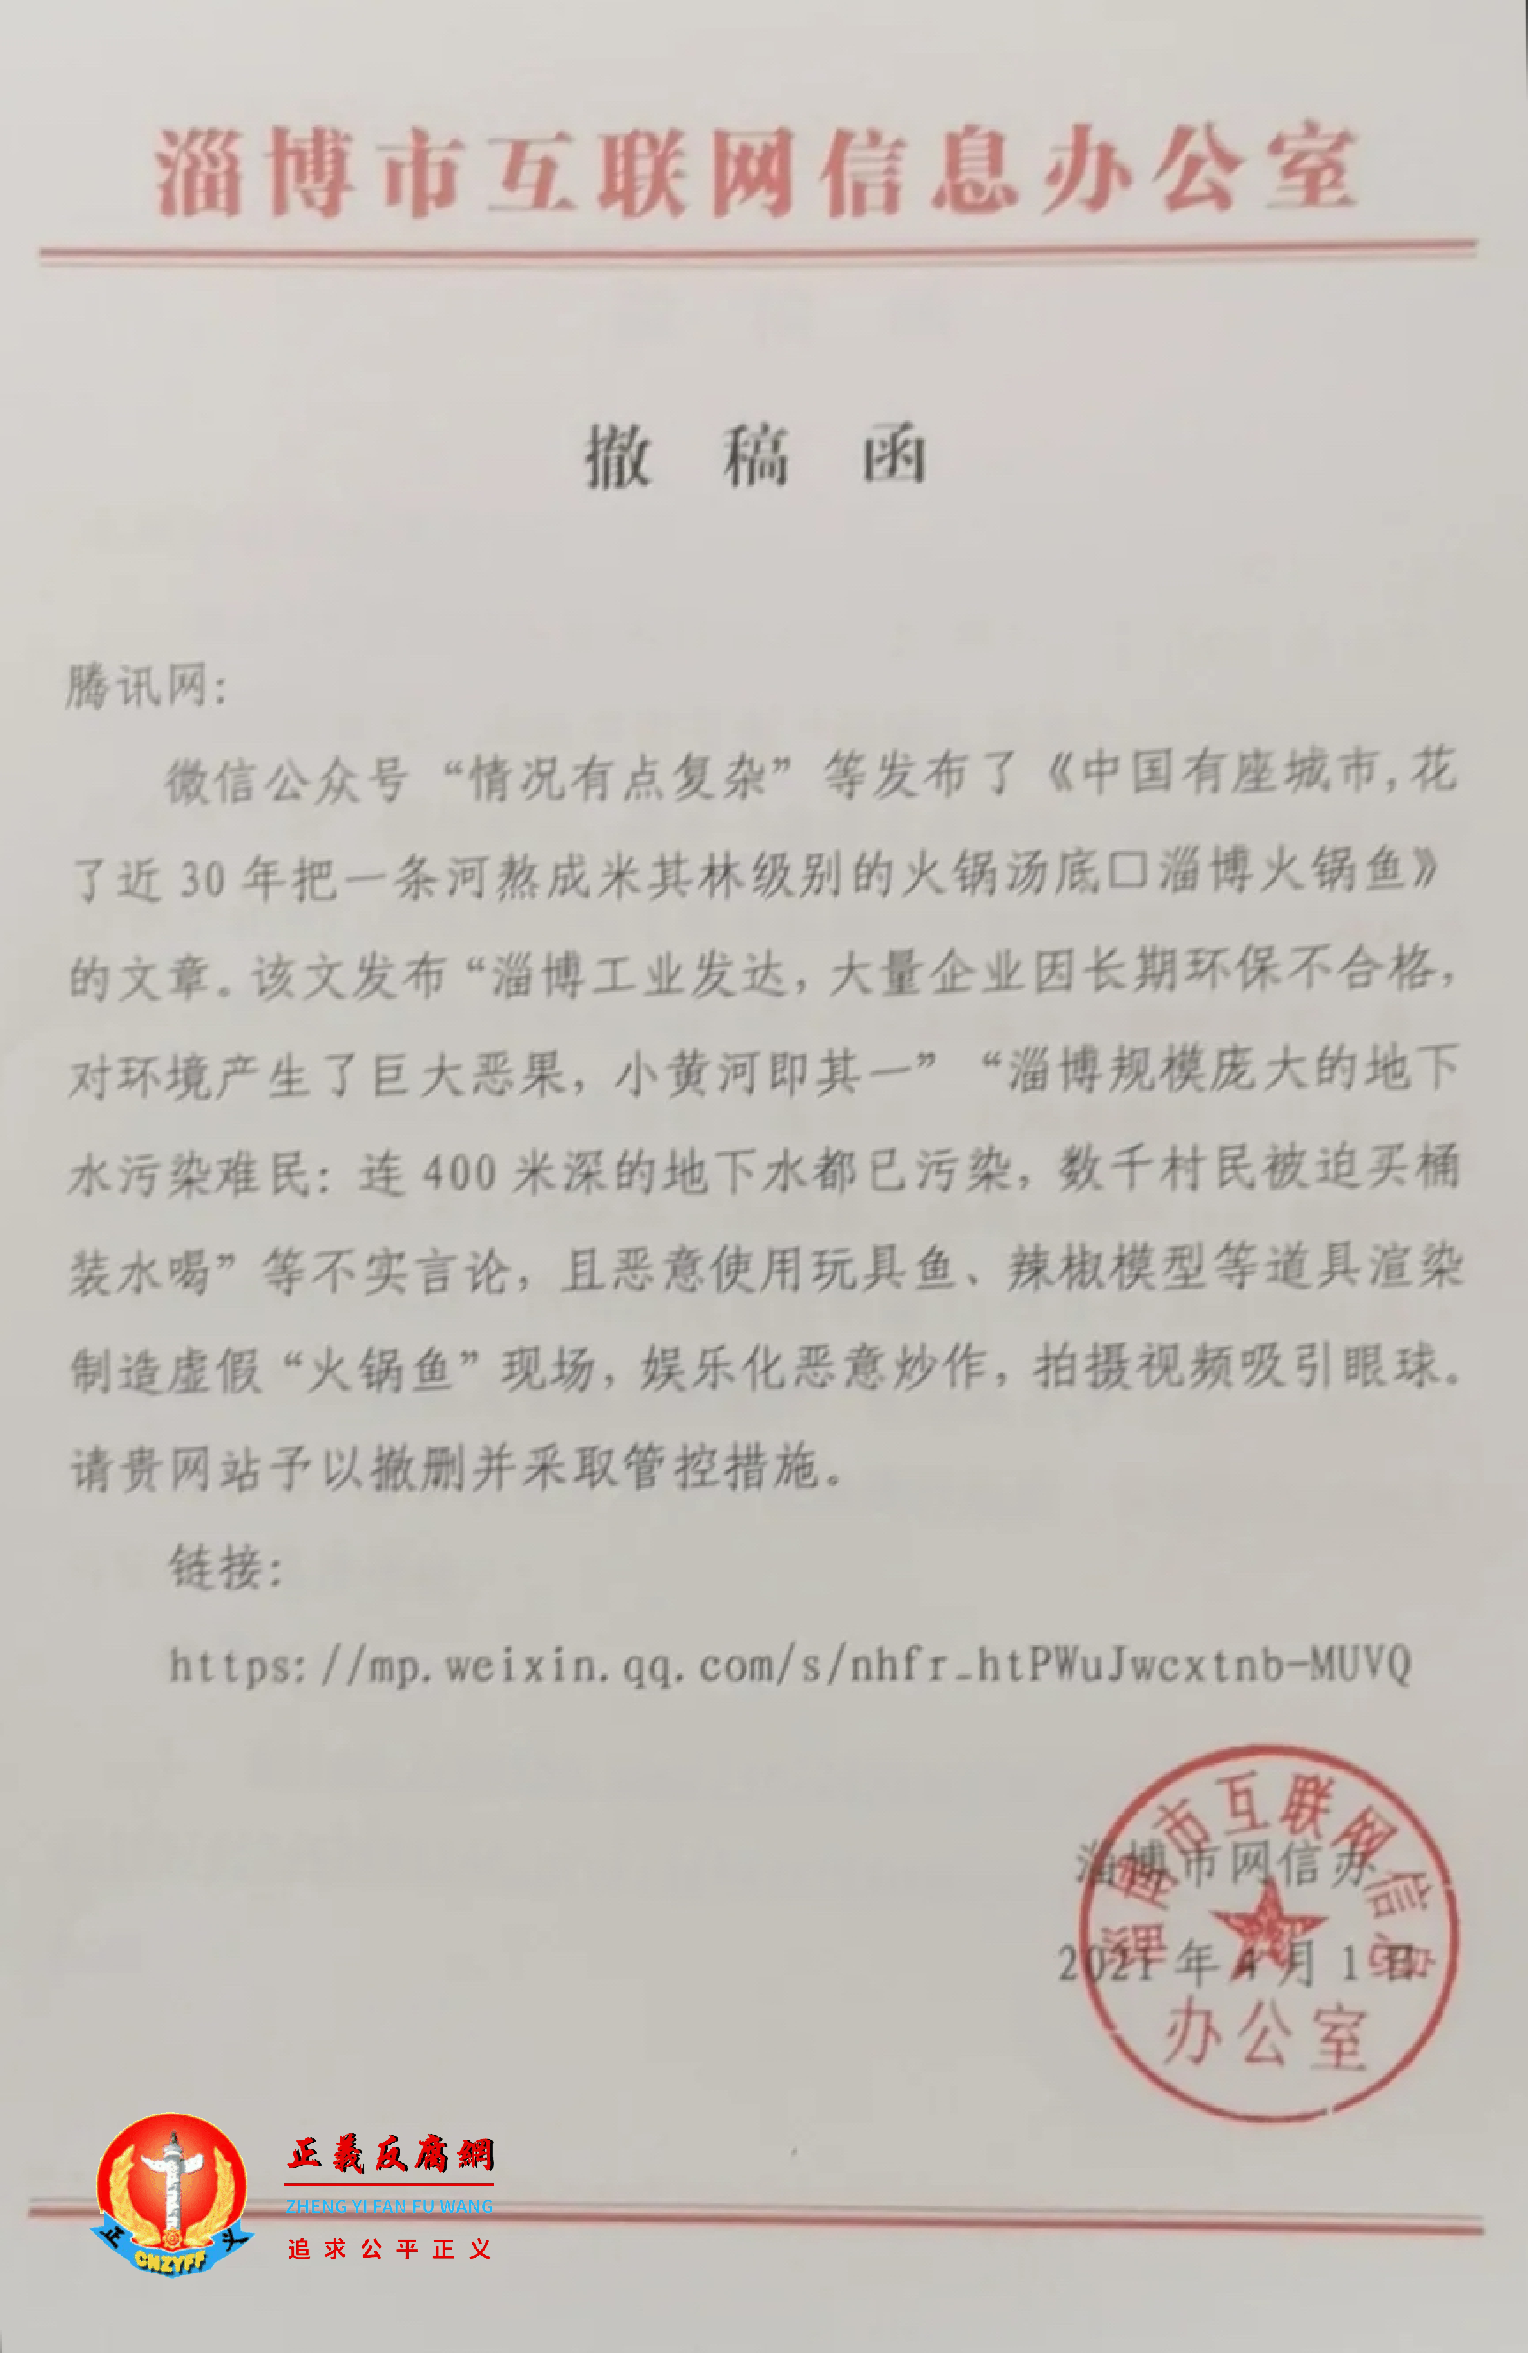 淄博市互联网信息办公室向腾讯网发出撤稿函.png